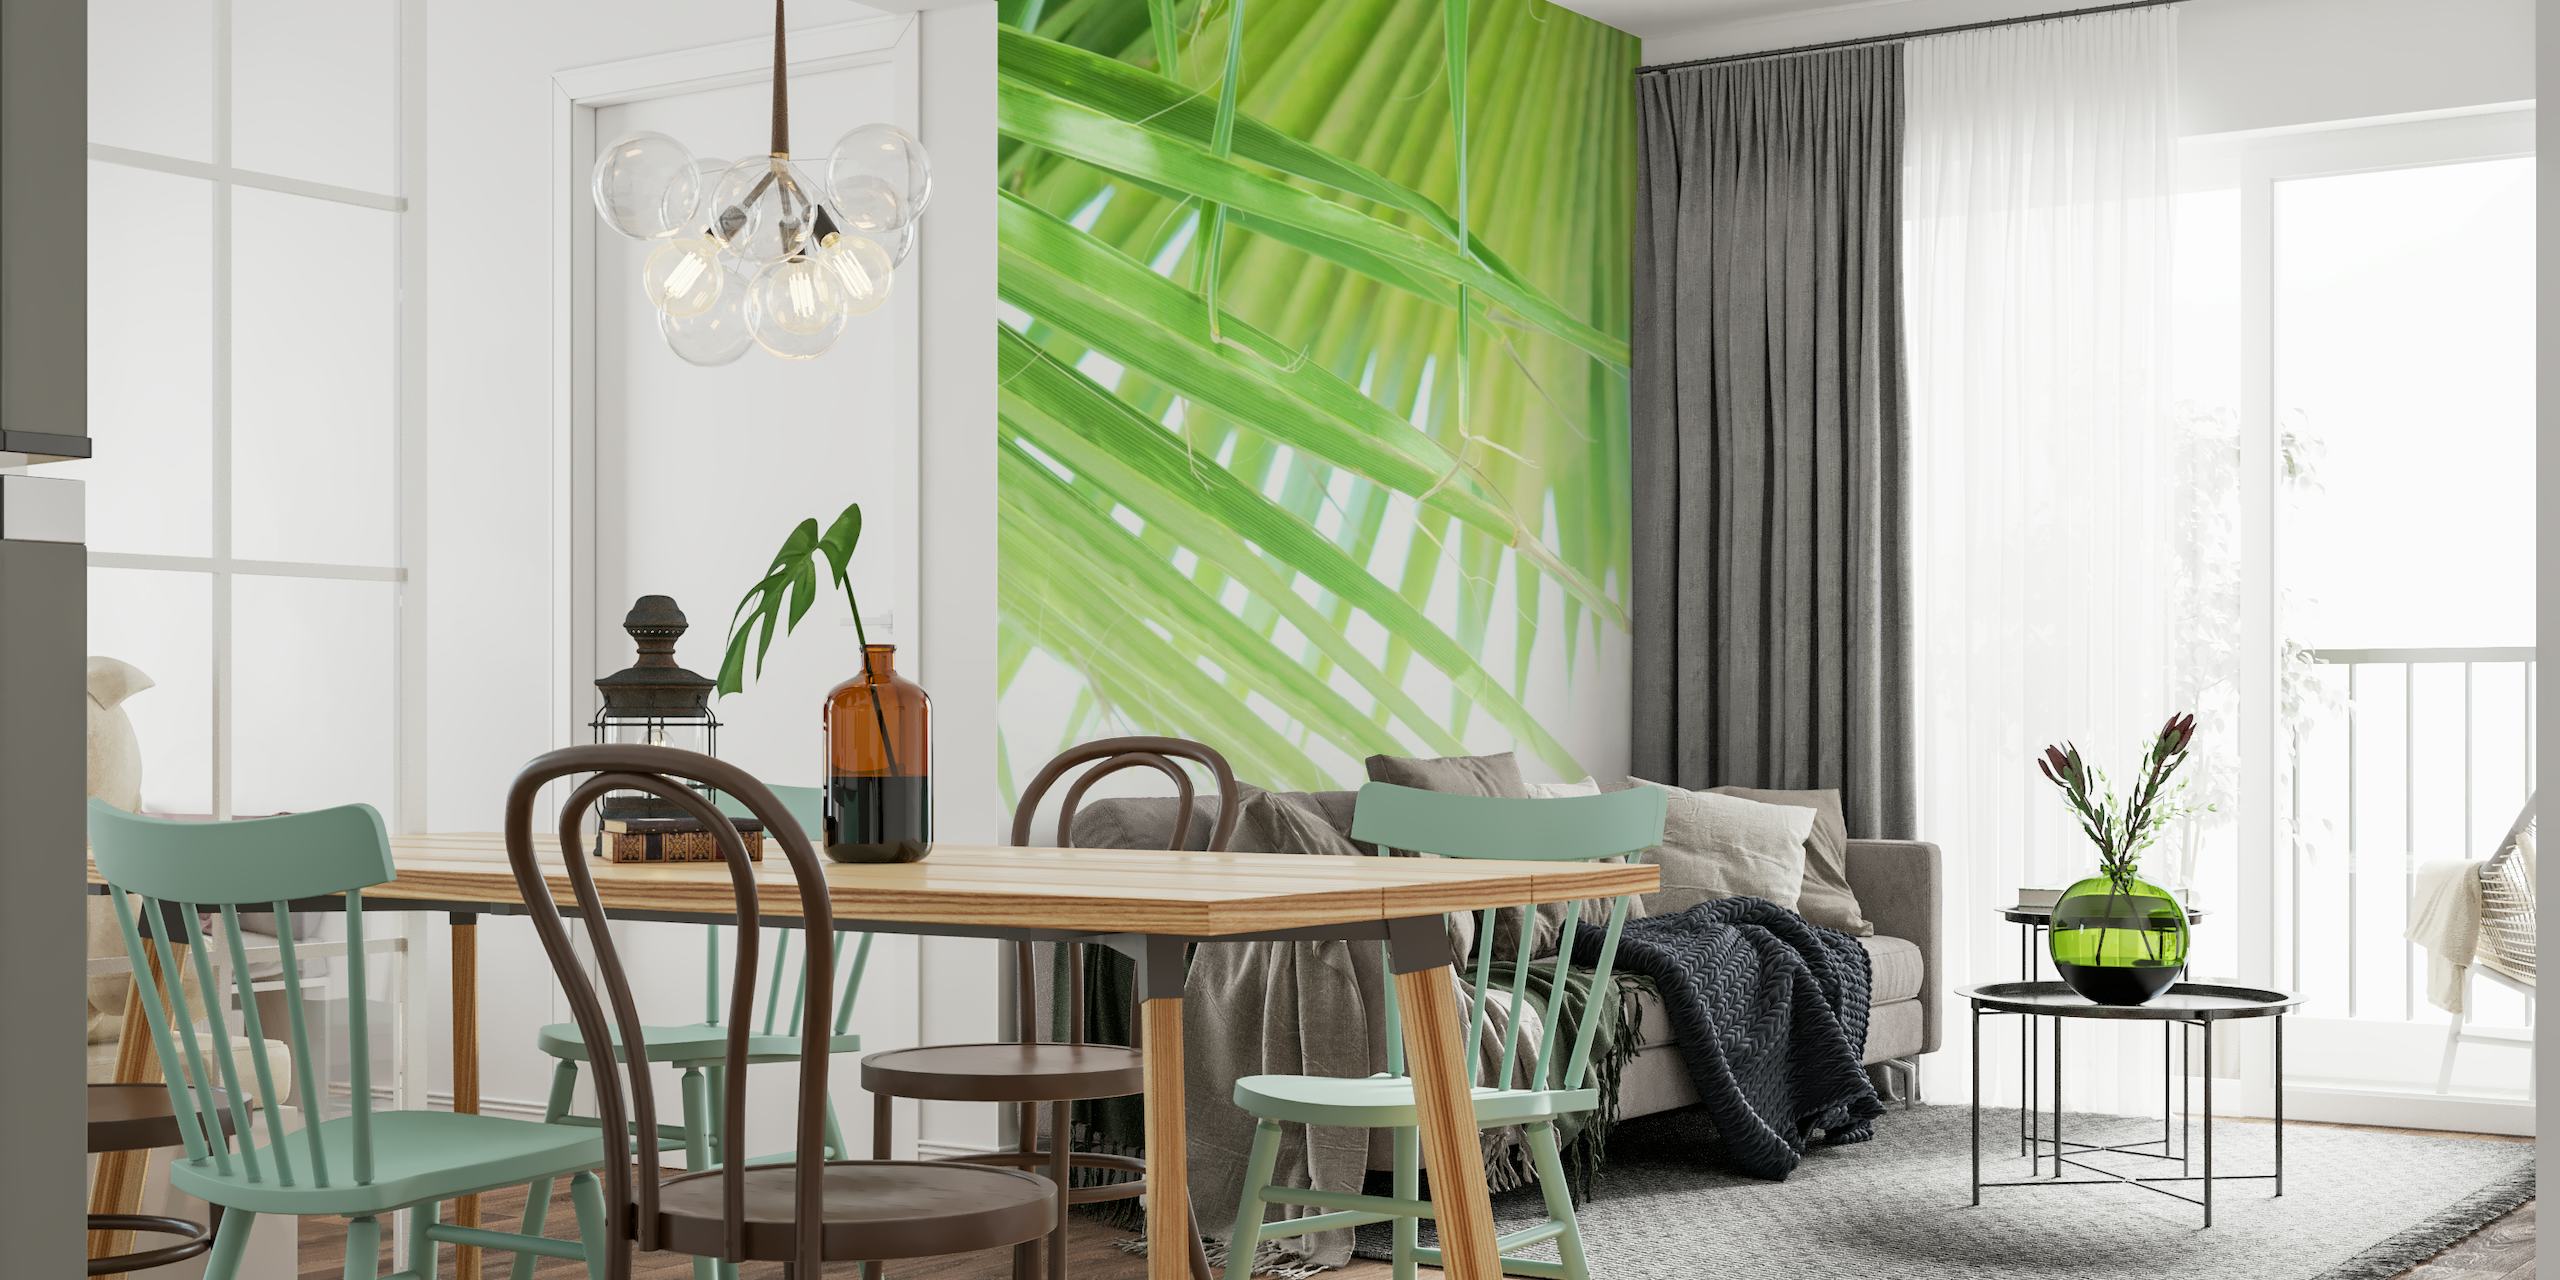 Papier peint mural en forme de feuilles de palmier en éventail vert pour une décoration de pièce rafraîchissante